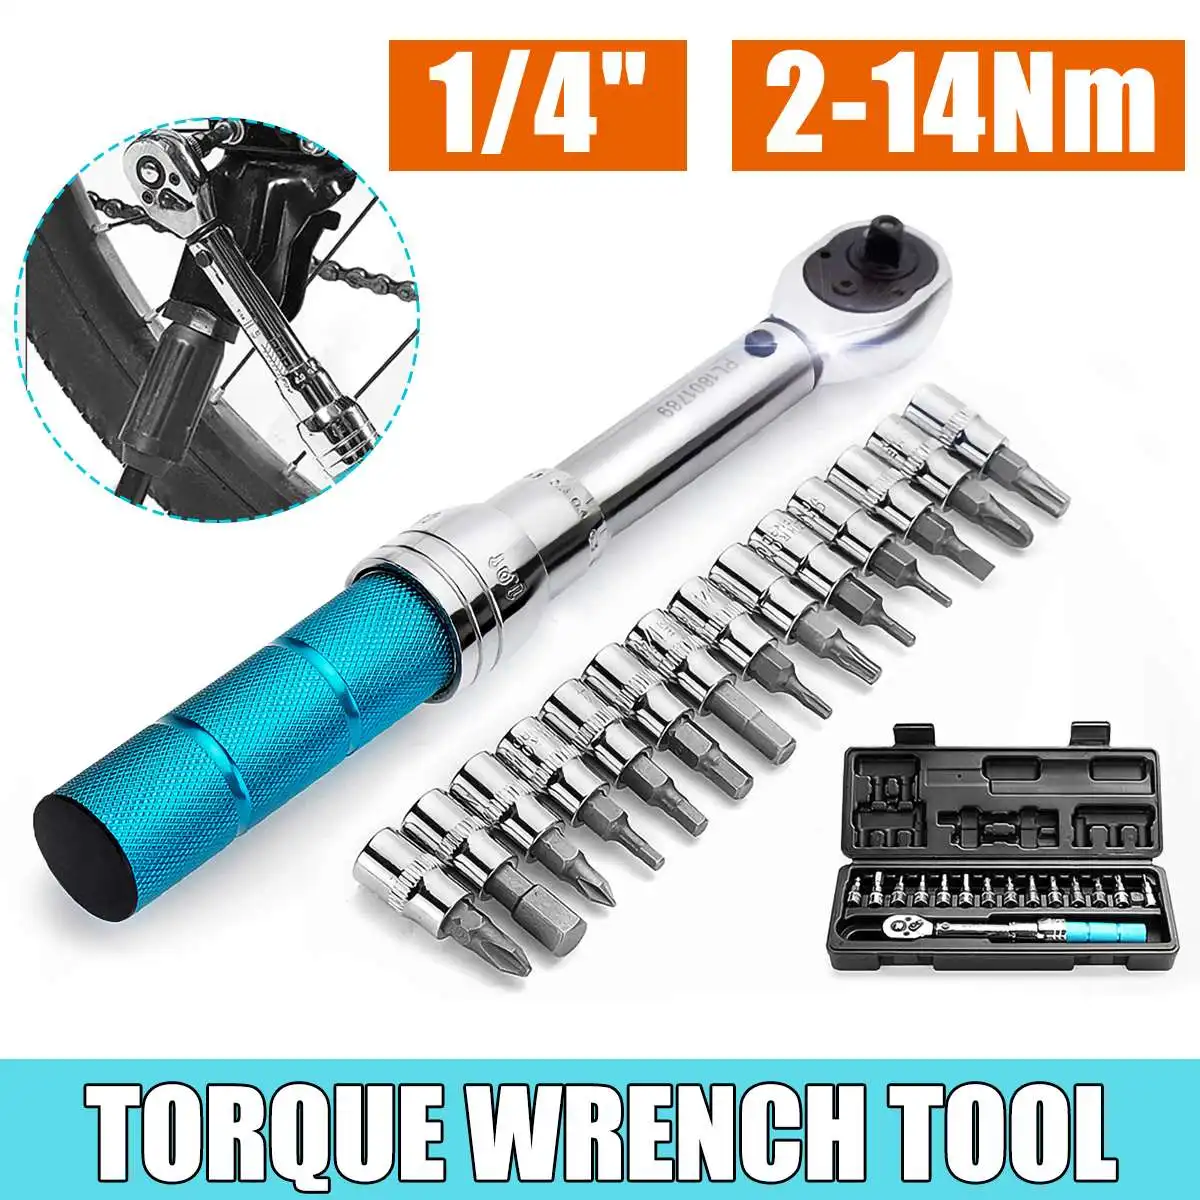 

15Pcs 1/4" 2-14NM Click Adjustable Torque Wrench Bicycle Repair Tool Kit Set Bike Repair Spanner Machanical Hand Tool Set